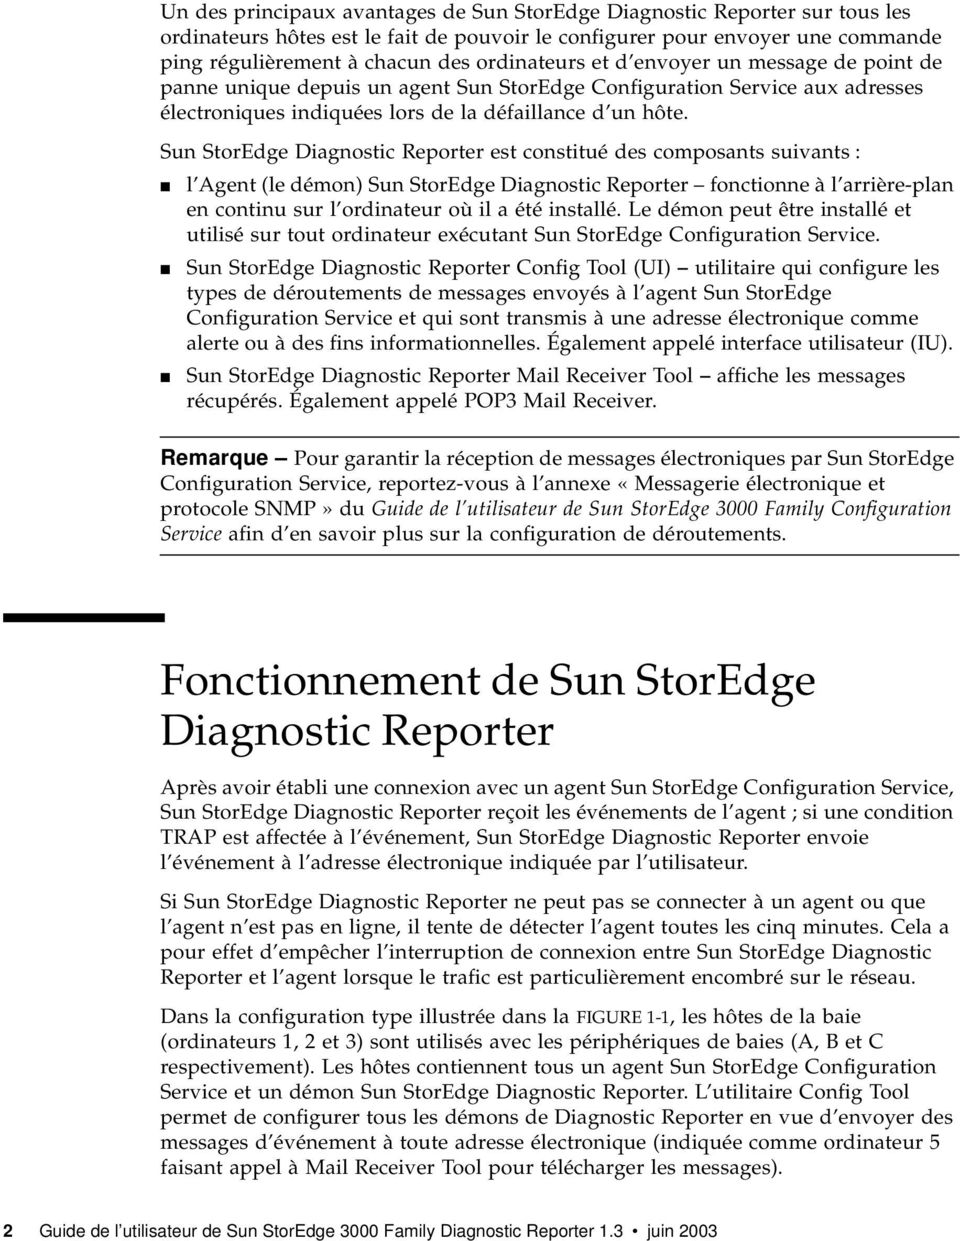 Sun StorEdge Diagnostic Reporter est constitué des composants suivants : l Agent (le démon) Sun StorEdge Diagnostic Reporter fonctionne à l arrière-plan en continu sur l ordinateur où il a été